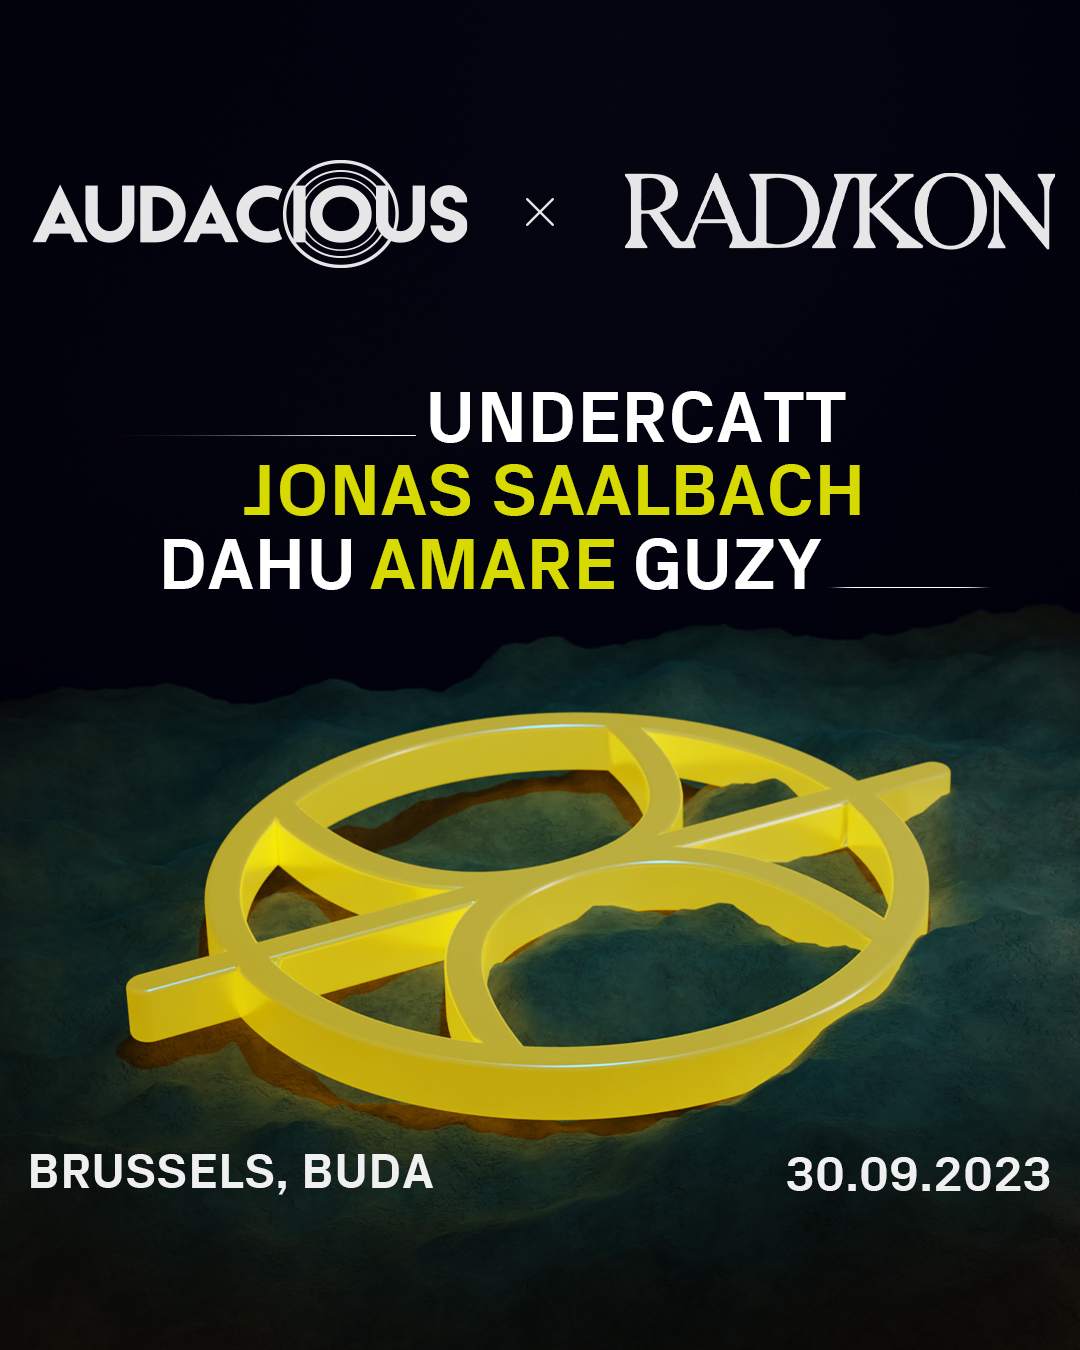 Radikon x Audacious with Undercatt and Jonas Saalbach - Página frontal